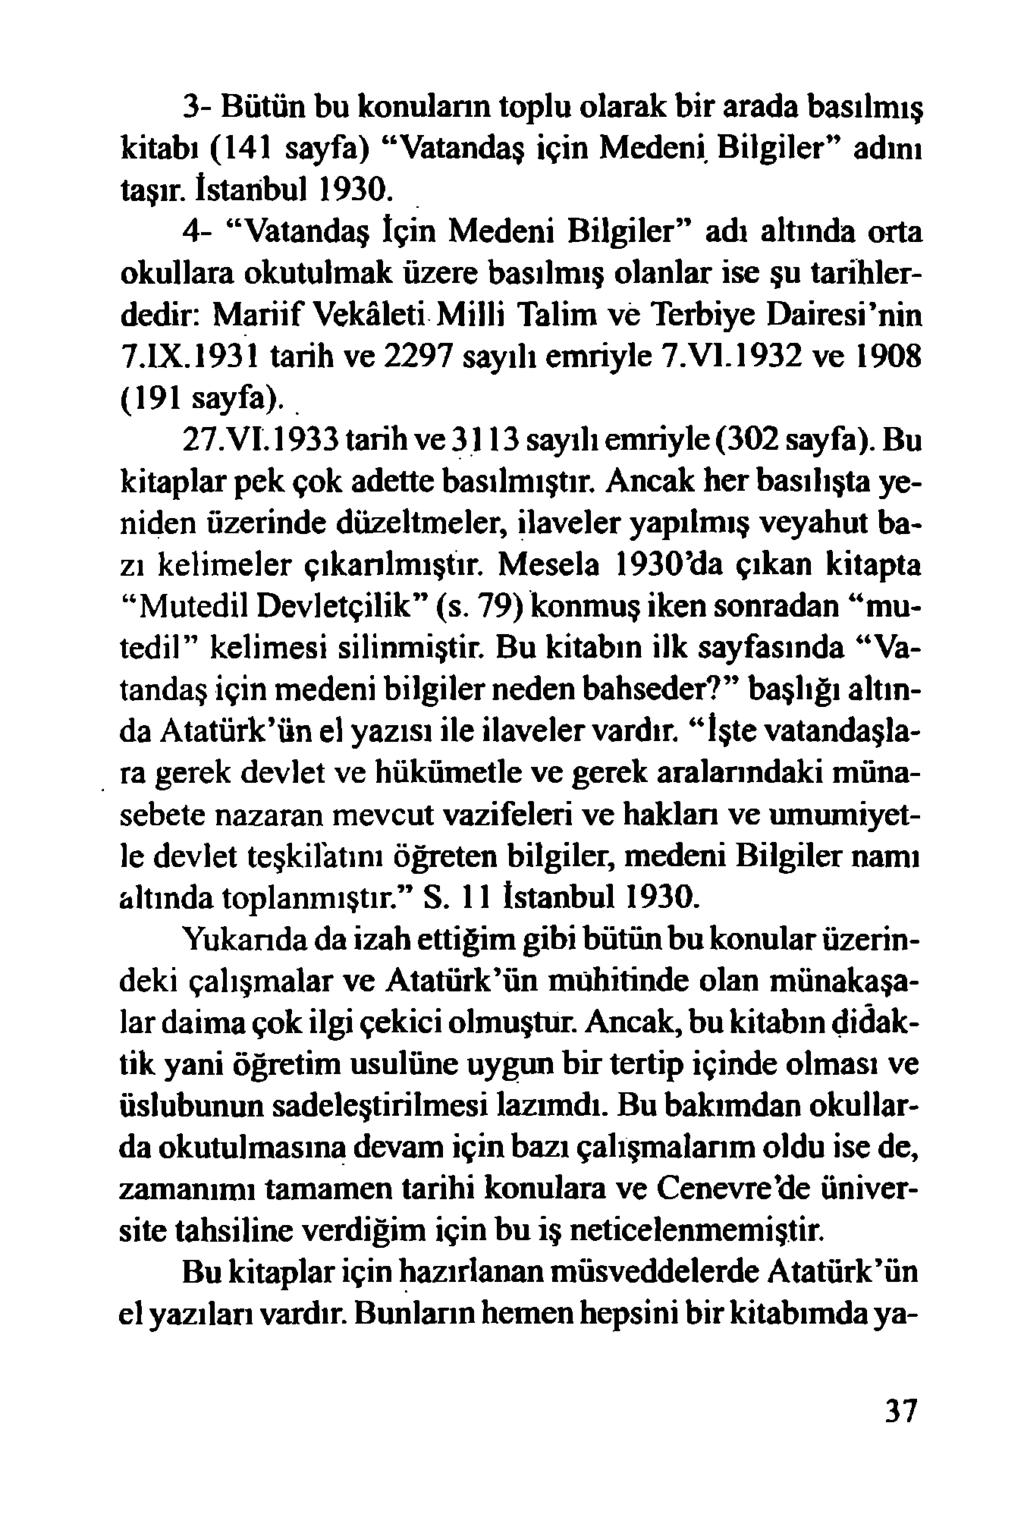 3- Bütün bu konulann toplu olarak bir arada basılmış kitabı (141 sayfa) Vatandaş için Medeni Bilgiler adını taşır. İstanbul 1930.